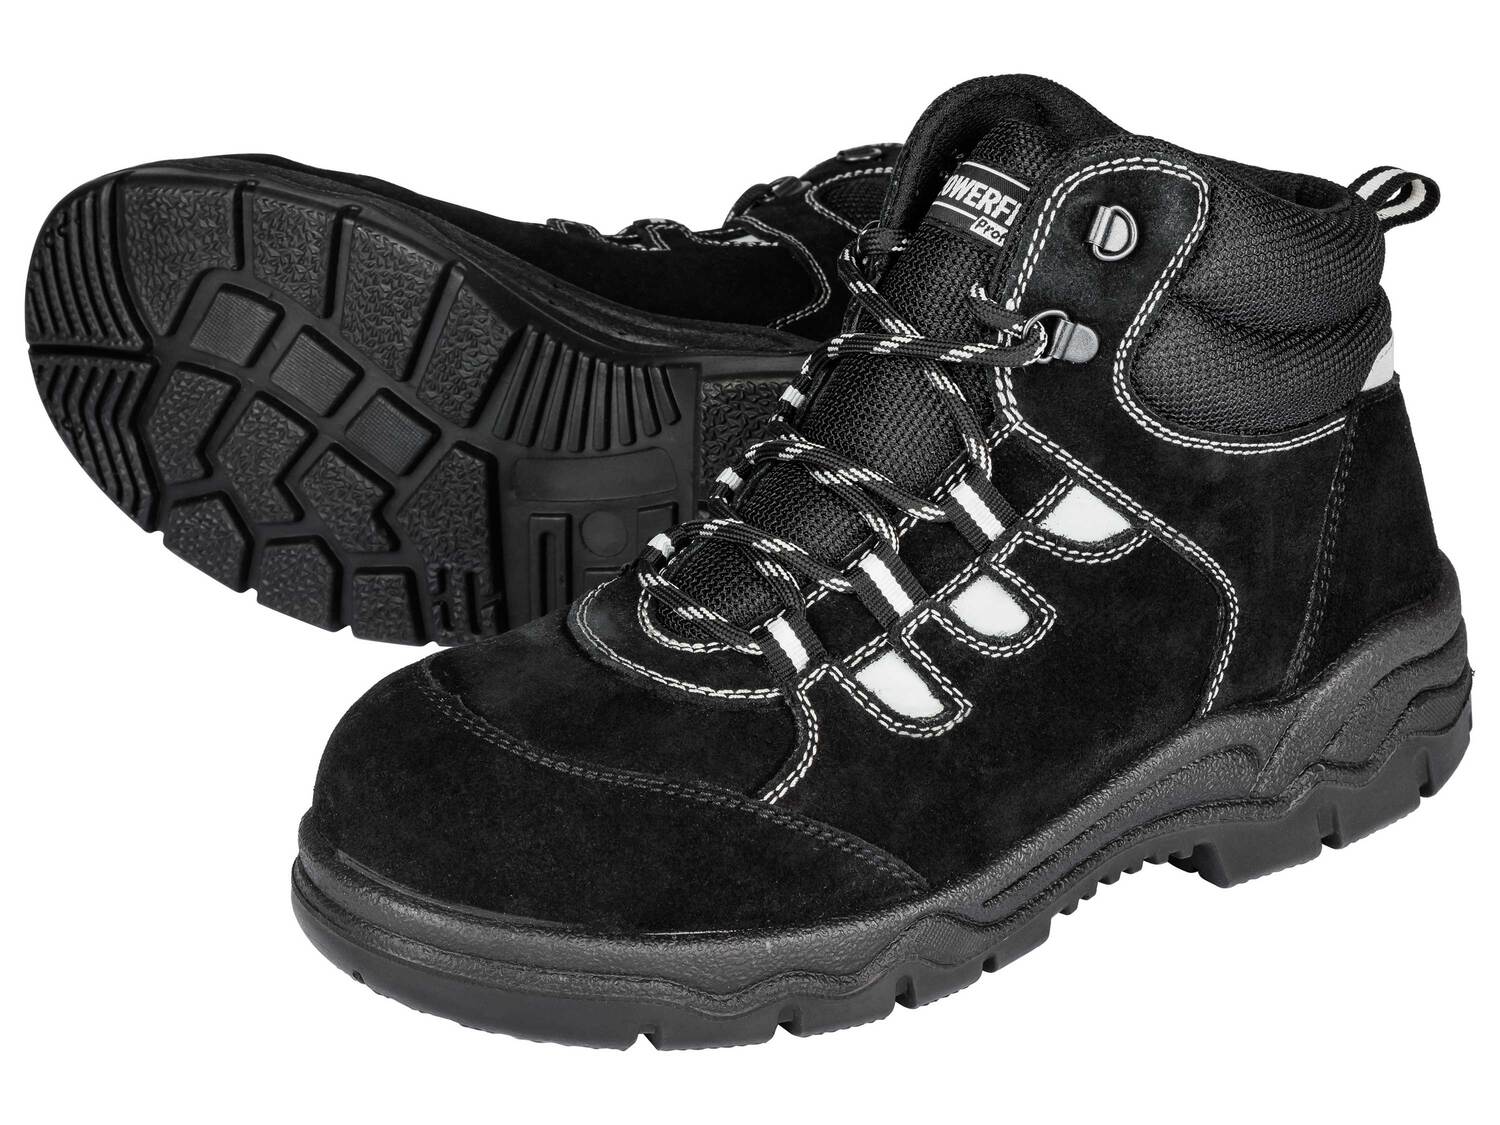 Skórzane buty ochronne Powerfix, cena 69,00 PLN 
różne wzory i rozmiary 
- ...